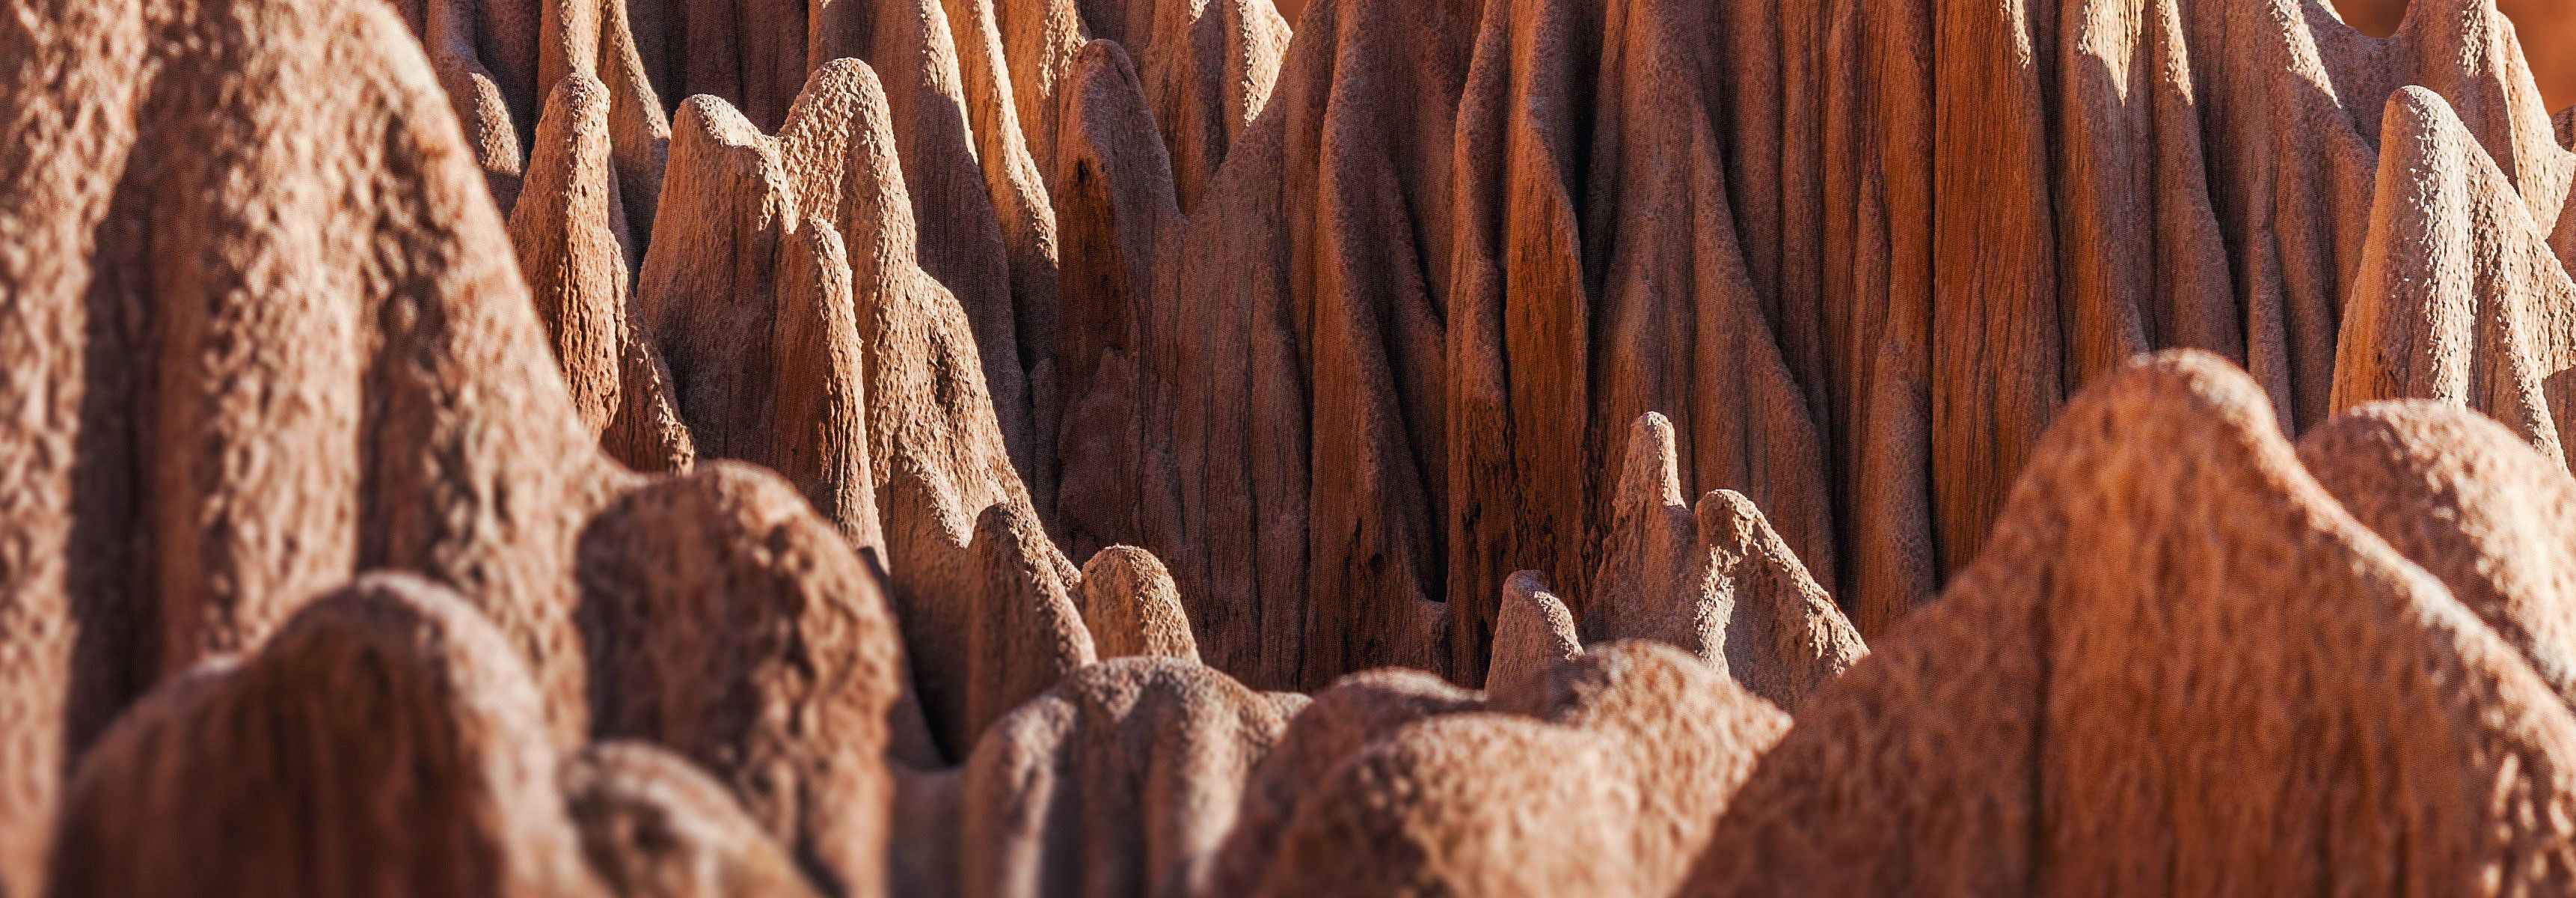 El tsingy rojo de Antsiranana, Madagascar. Karsts naturales ma